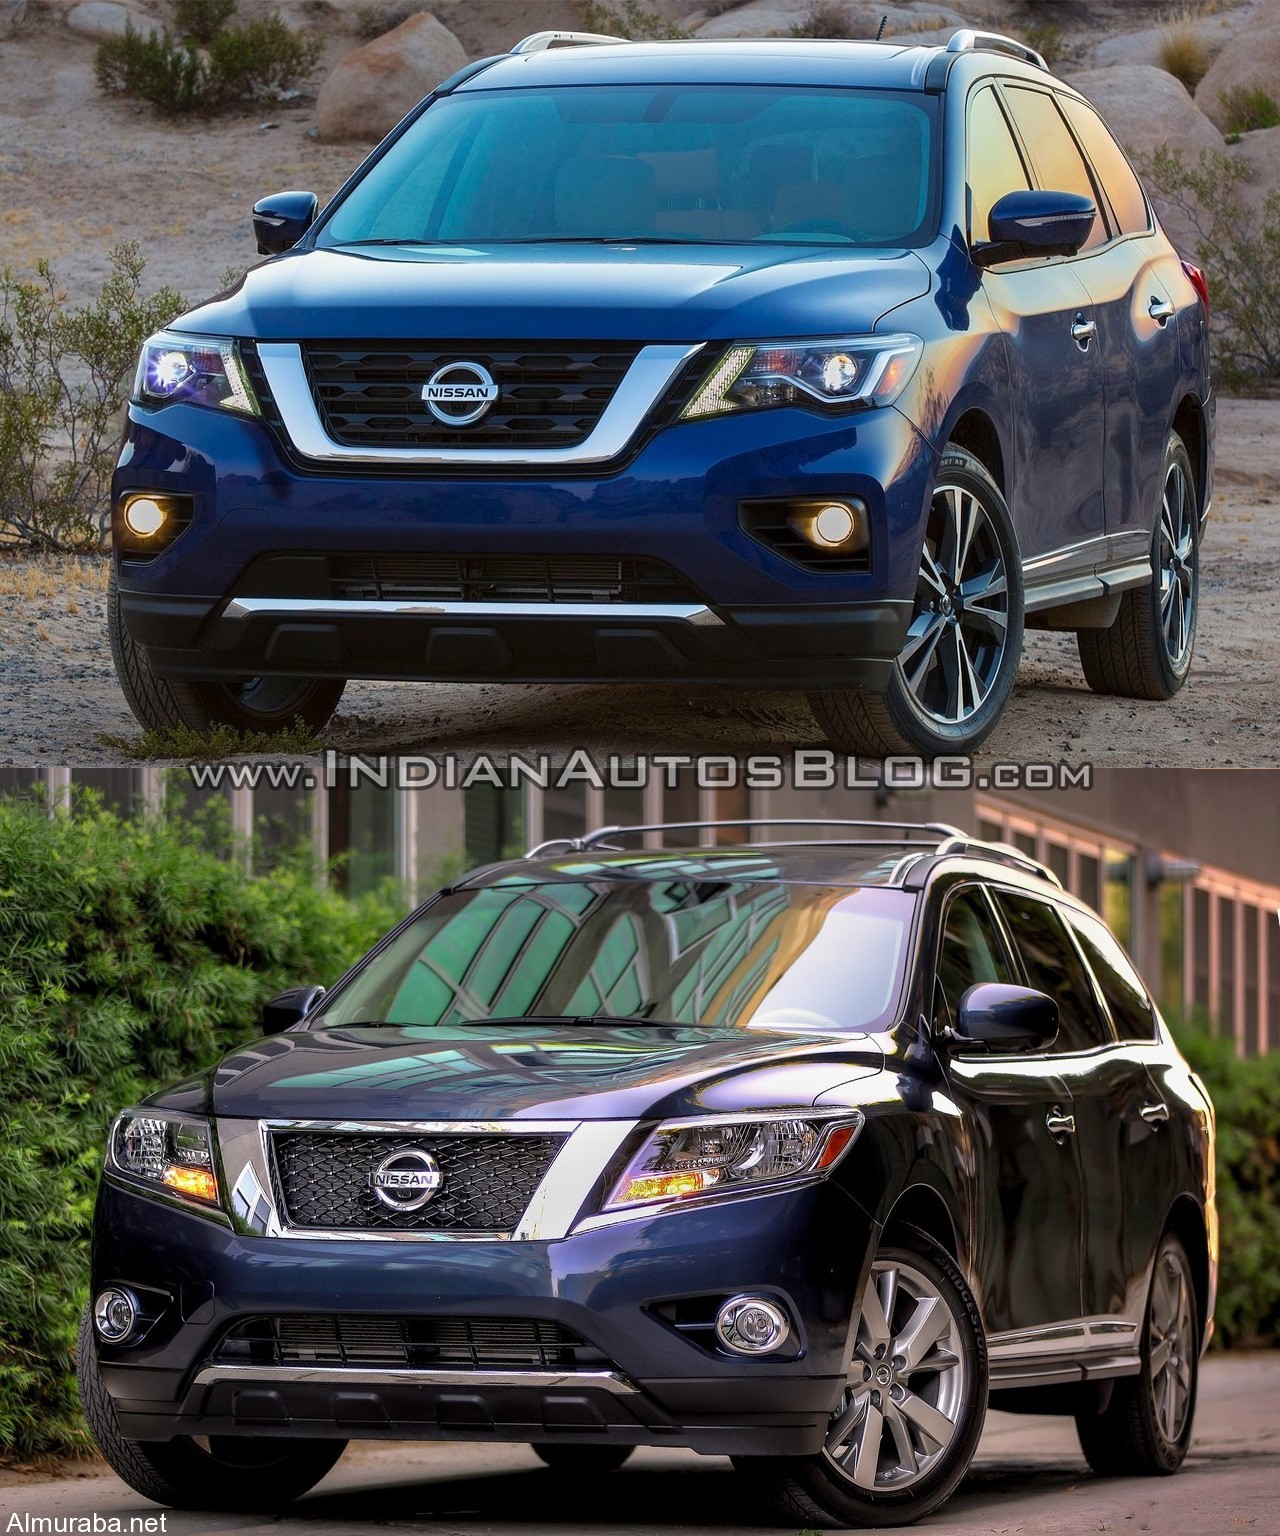 "مقارنة بالصور" بين موديلي "نيسان" باثفايندر 2017 و 2016 Nissan Pathfinder 6